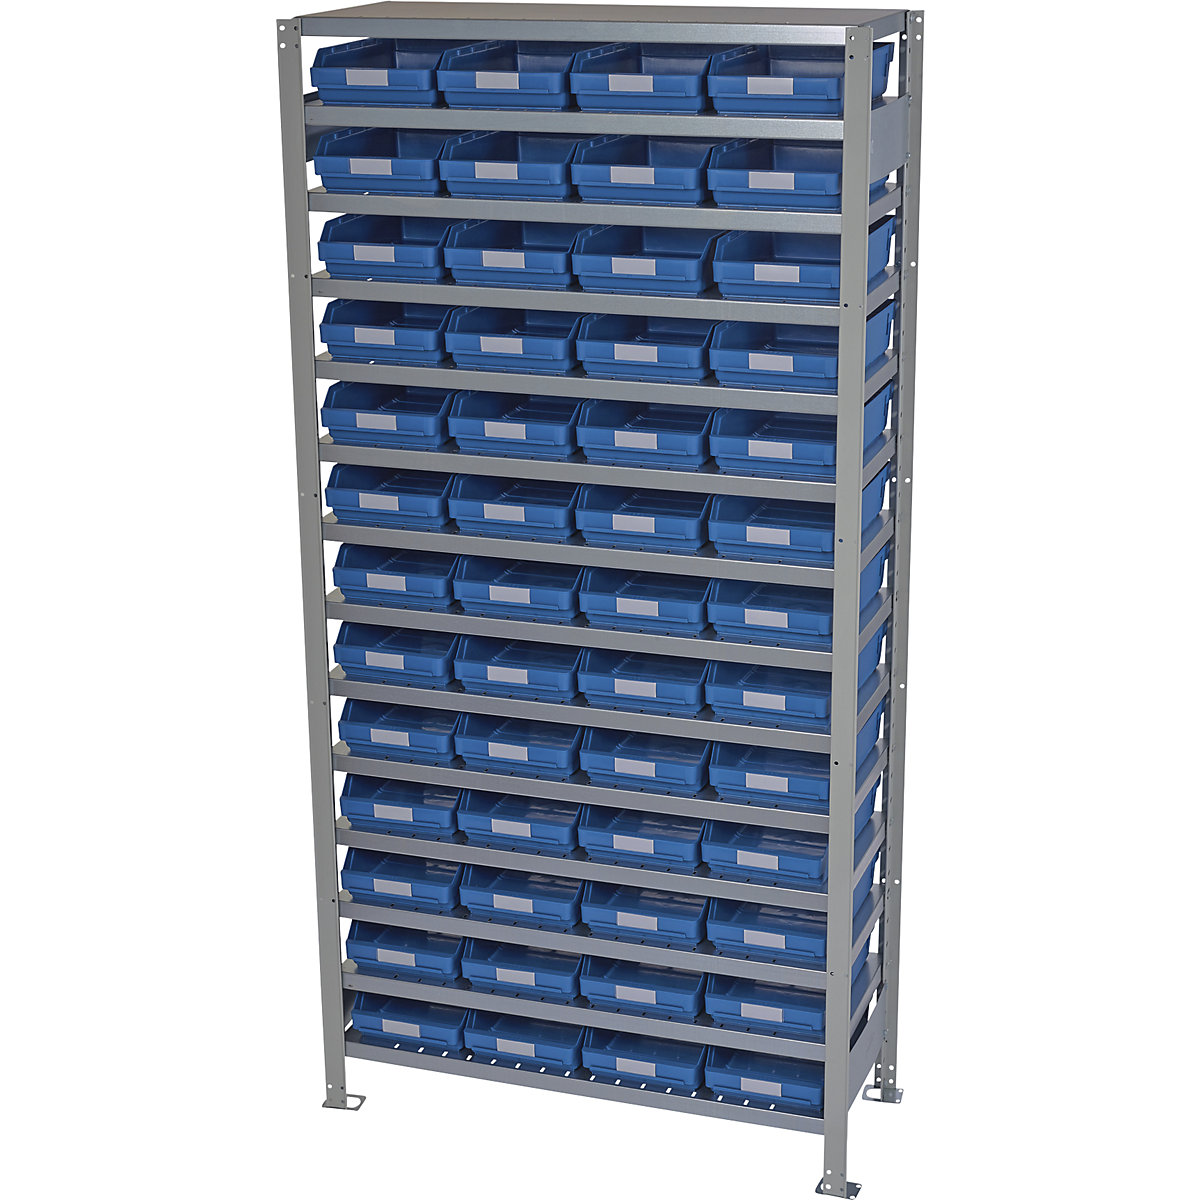 Estante de encaixar com caixas para estante – STEMO, altura da estante 2100 mm, estante básica, profundidade 300 mm, 52 caixas azuis-19